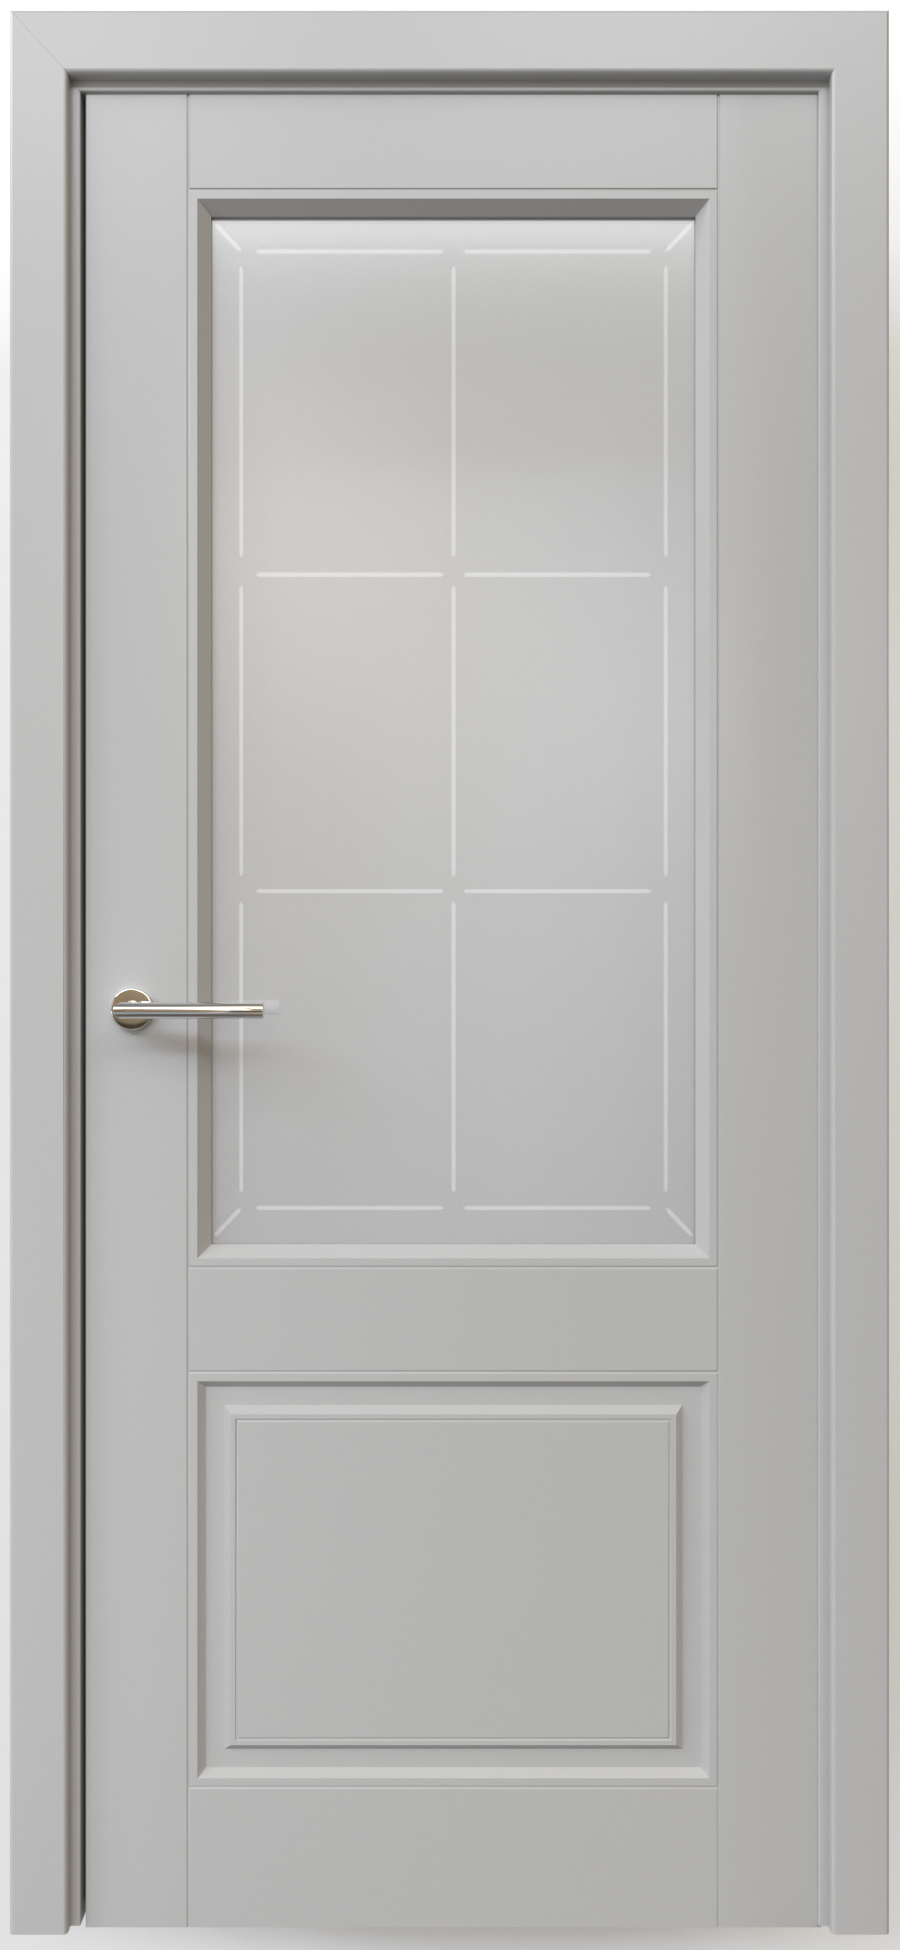 Полотно дверное остекленное Эмаль Классика-2 ЛЕВОЕ 800 серый стекло мателюкс "Прованс"(защелка маг.)